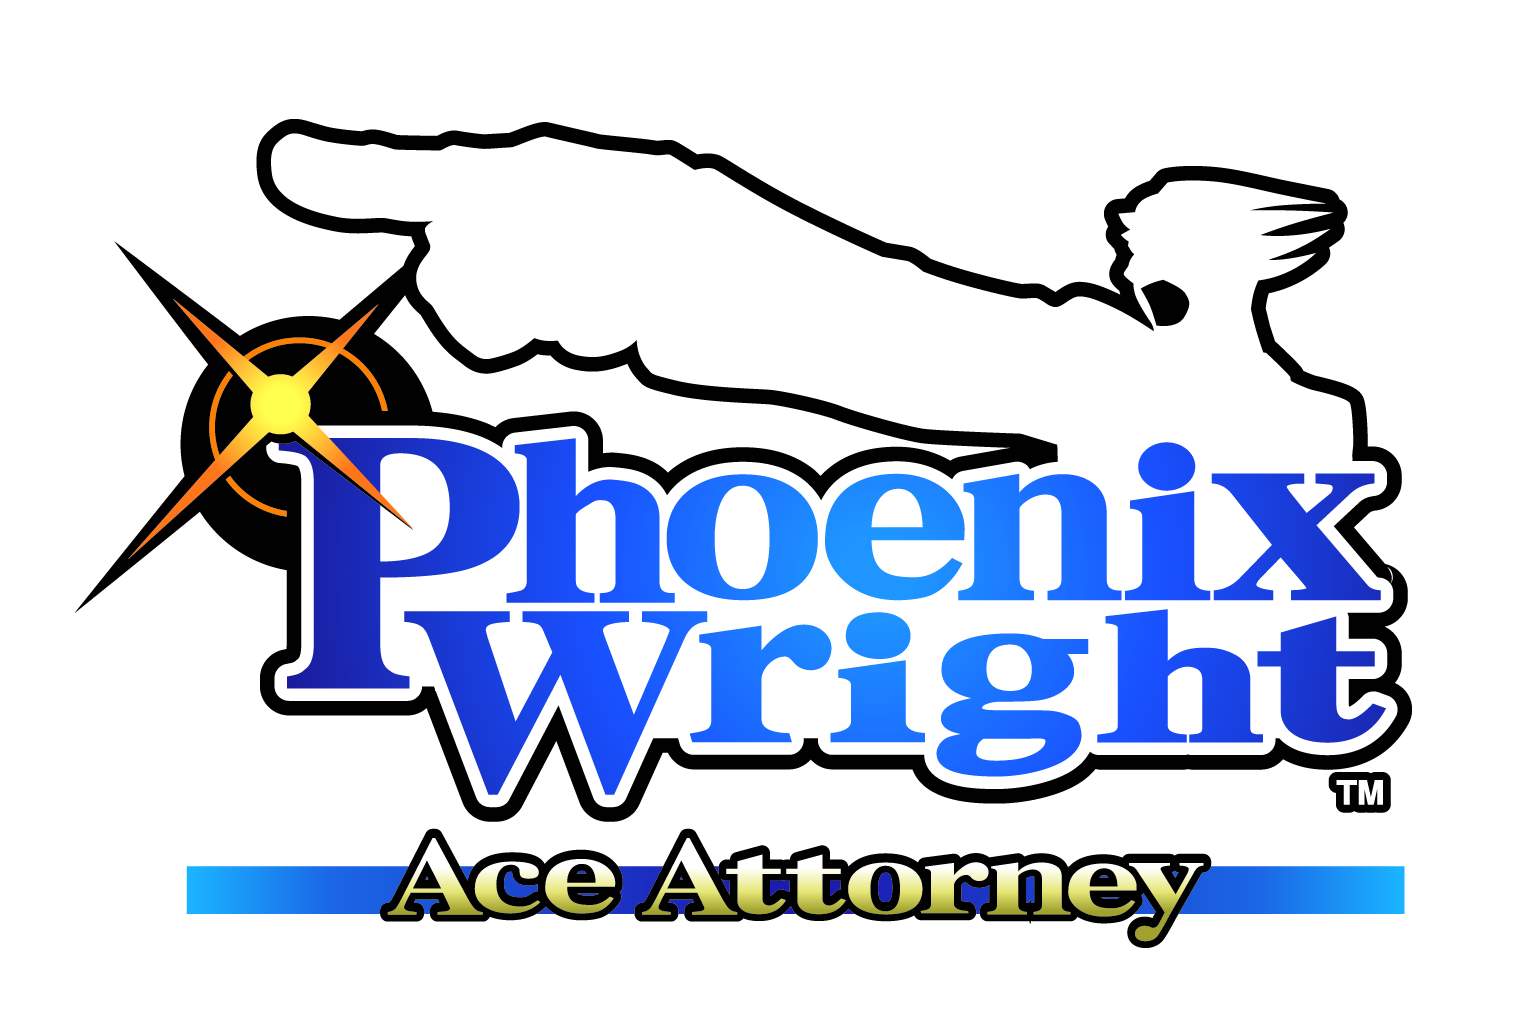 Eureka!, Ace Attorney Wiki